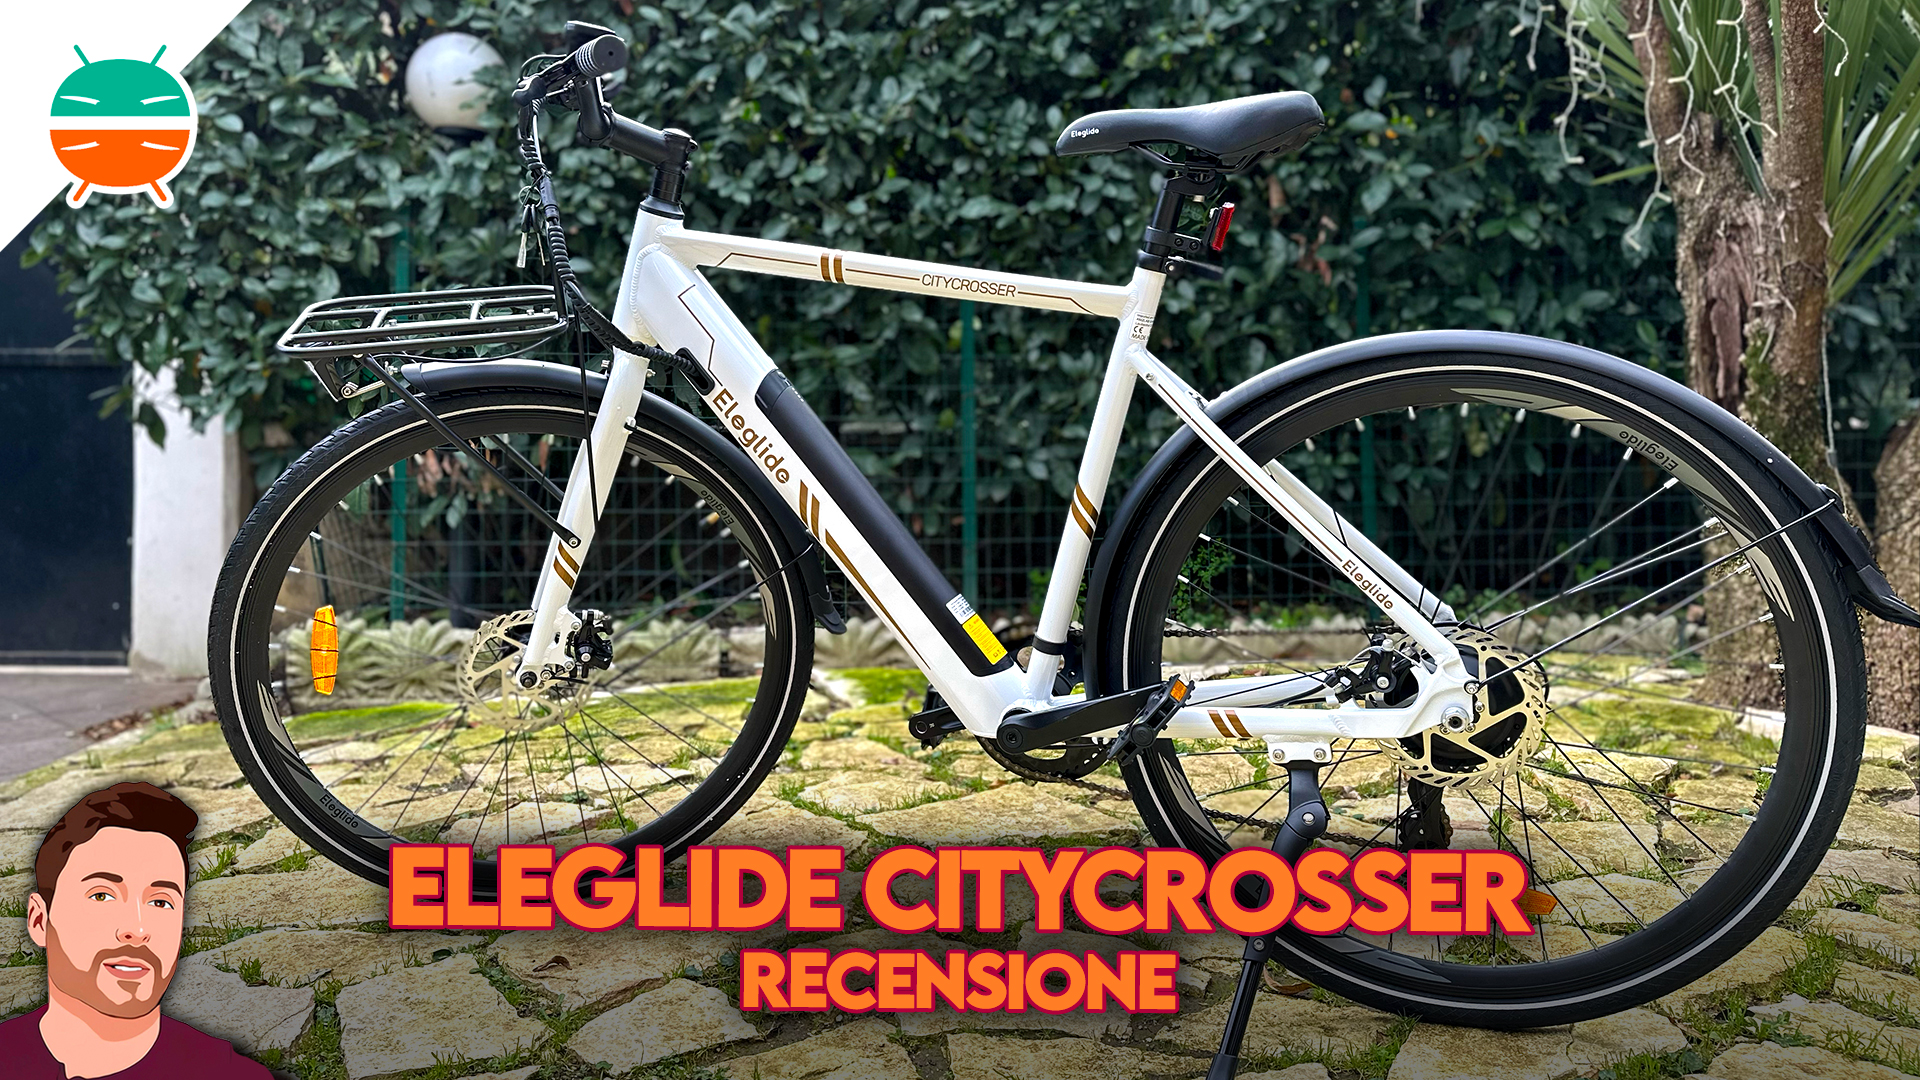 Boodschapper Negen leveren Eleglide Citycrosser Review: beste elektrische fiets? -GizChina.it